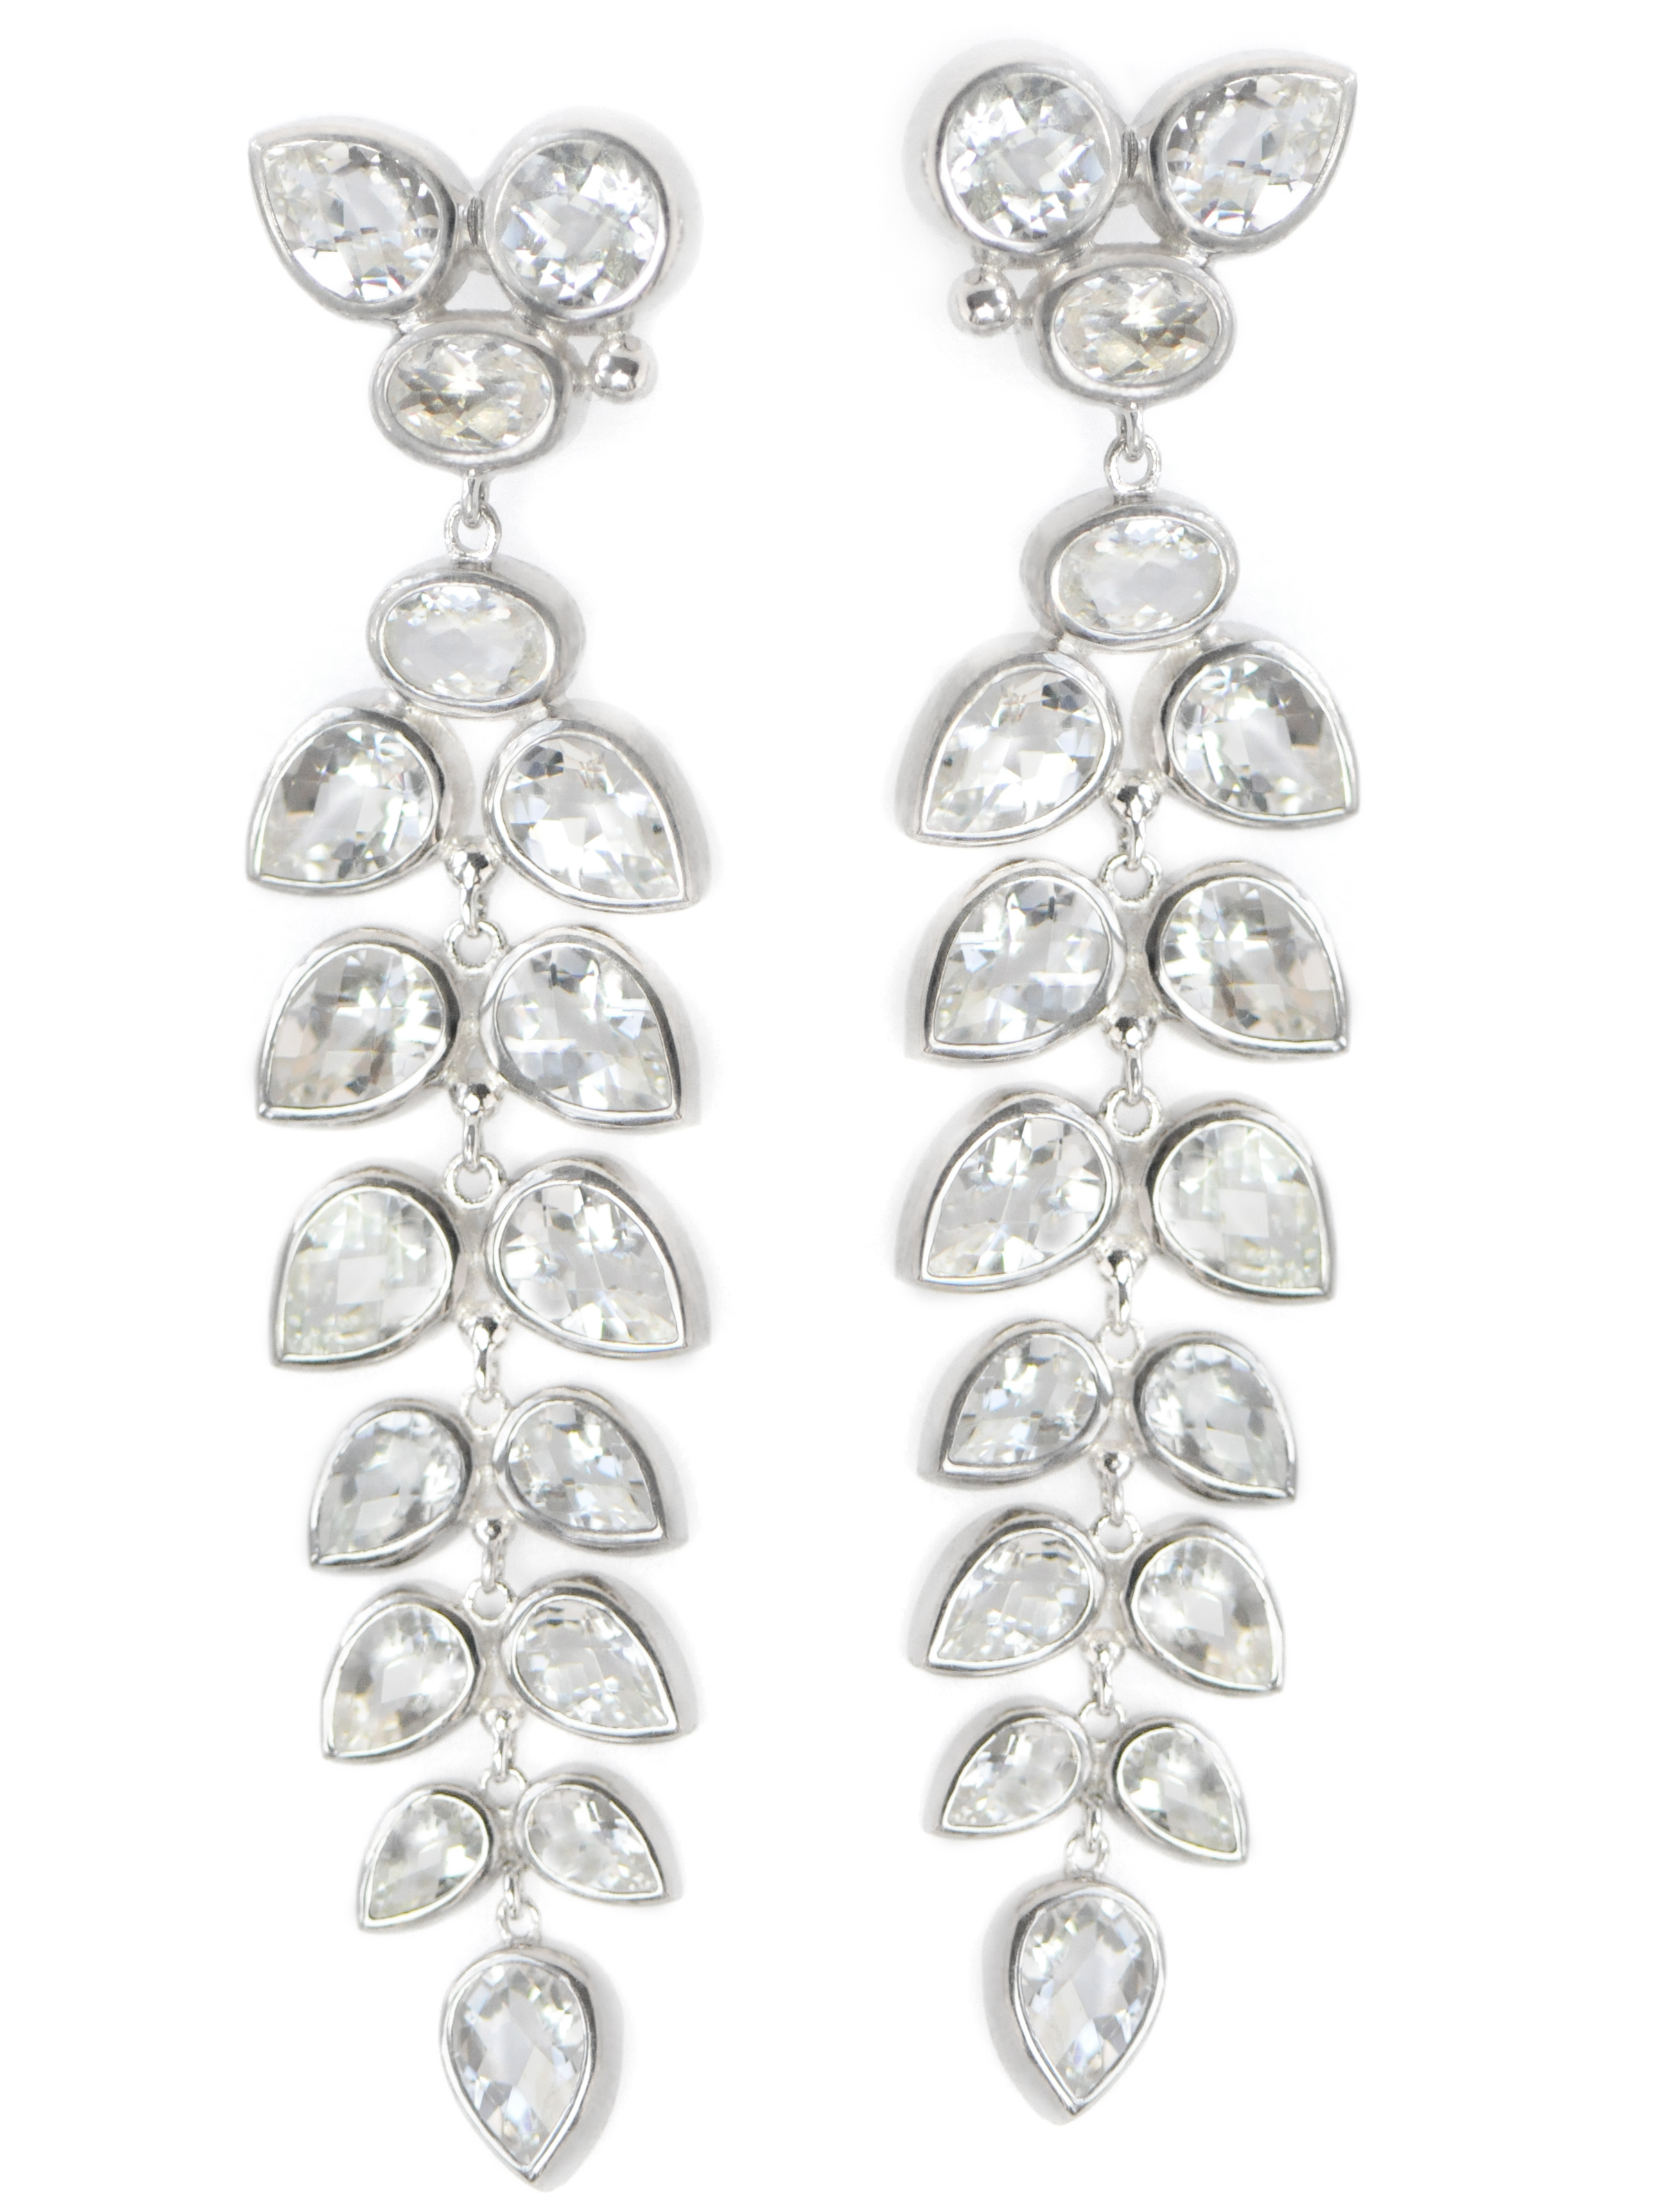 Anzie Jewelry Bouquet leaf earrings | JCK On Your Market